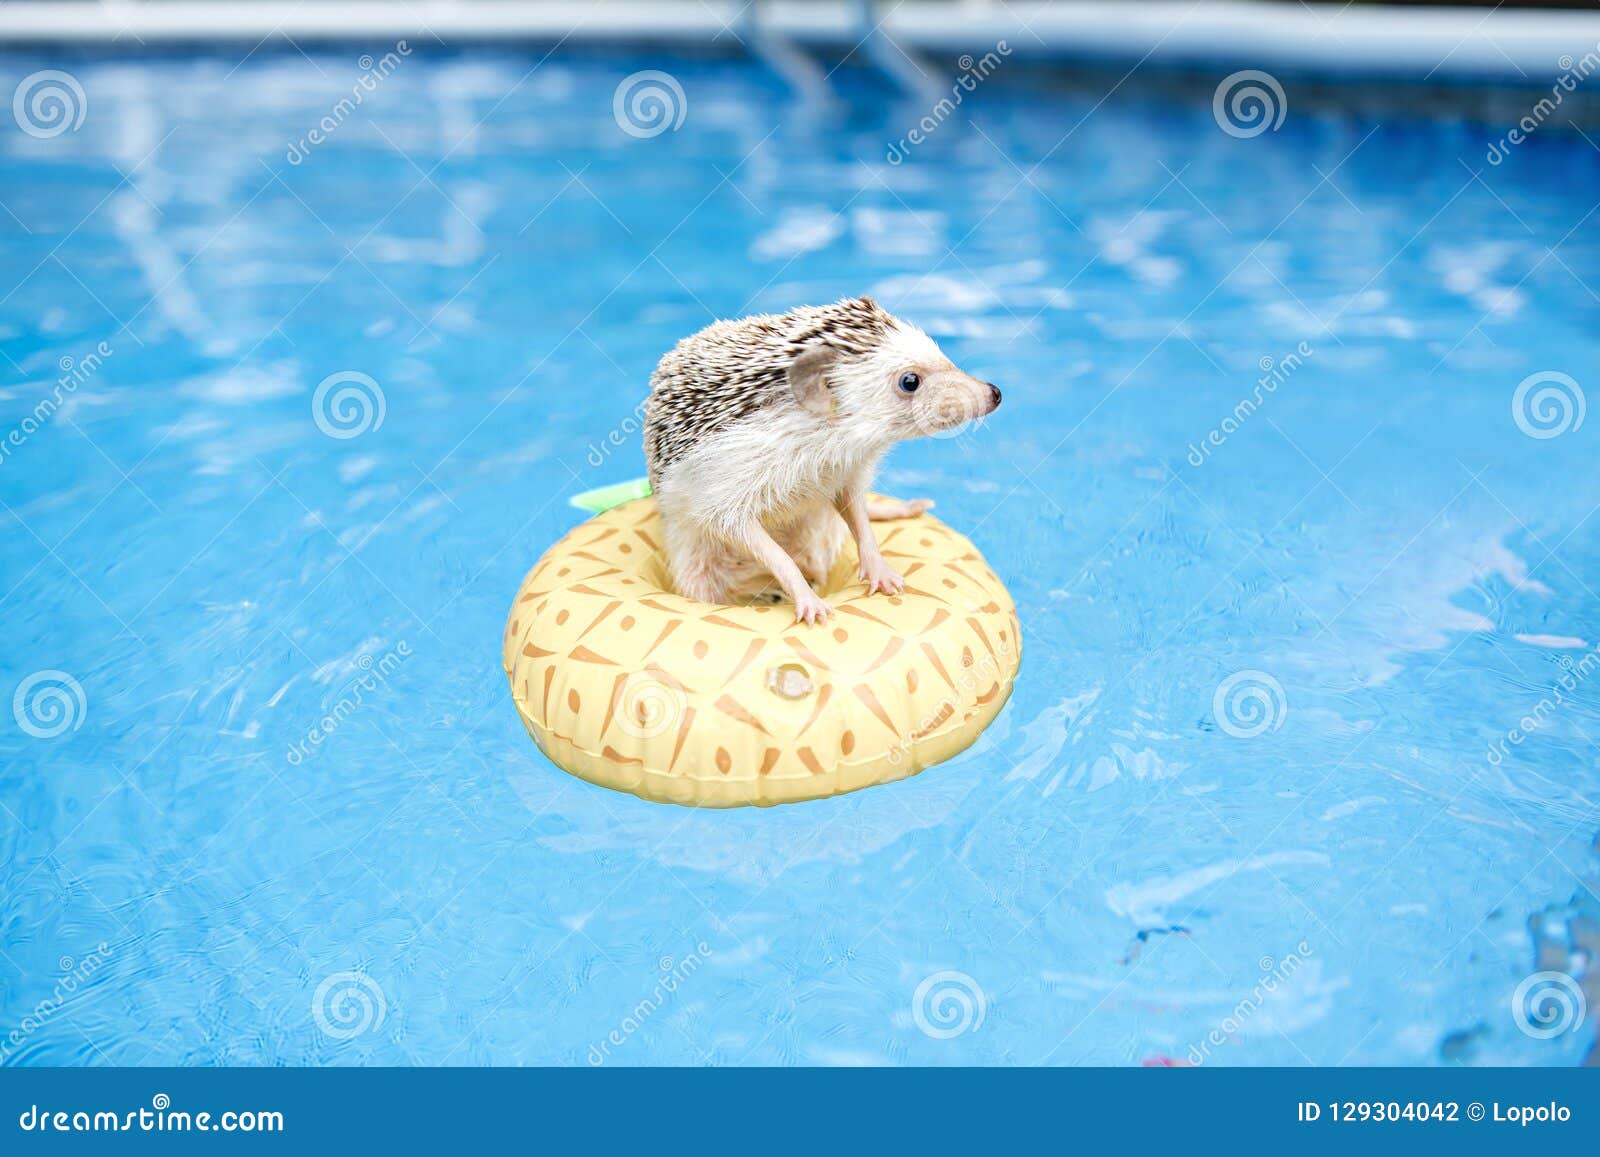 Ежик в воде. Ежик на надувном круге. Ежик купается. Еж в бассейне. Ежик плавает в бассейне.